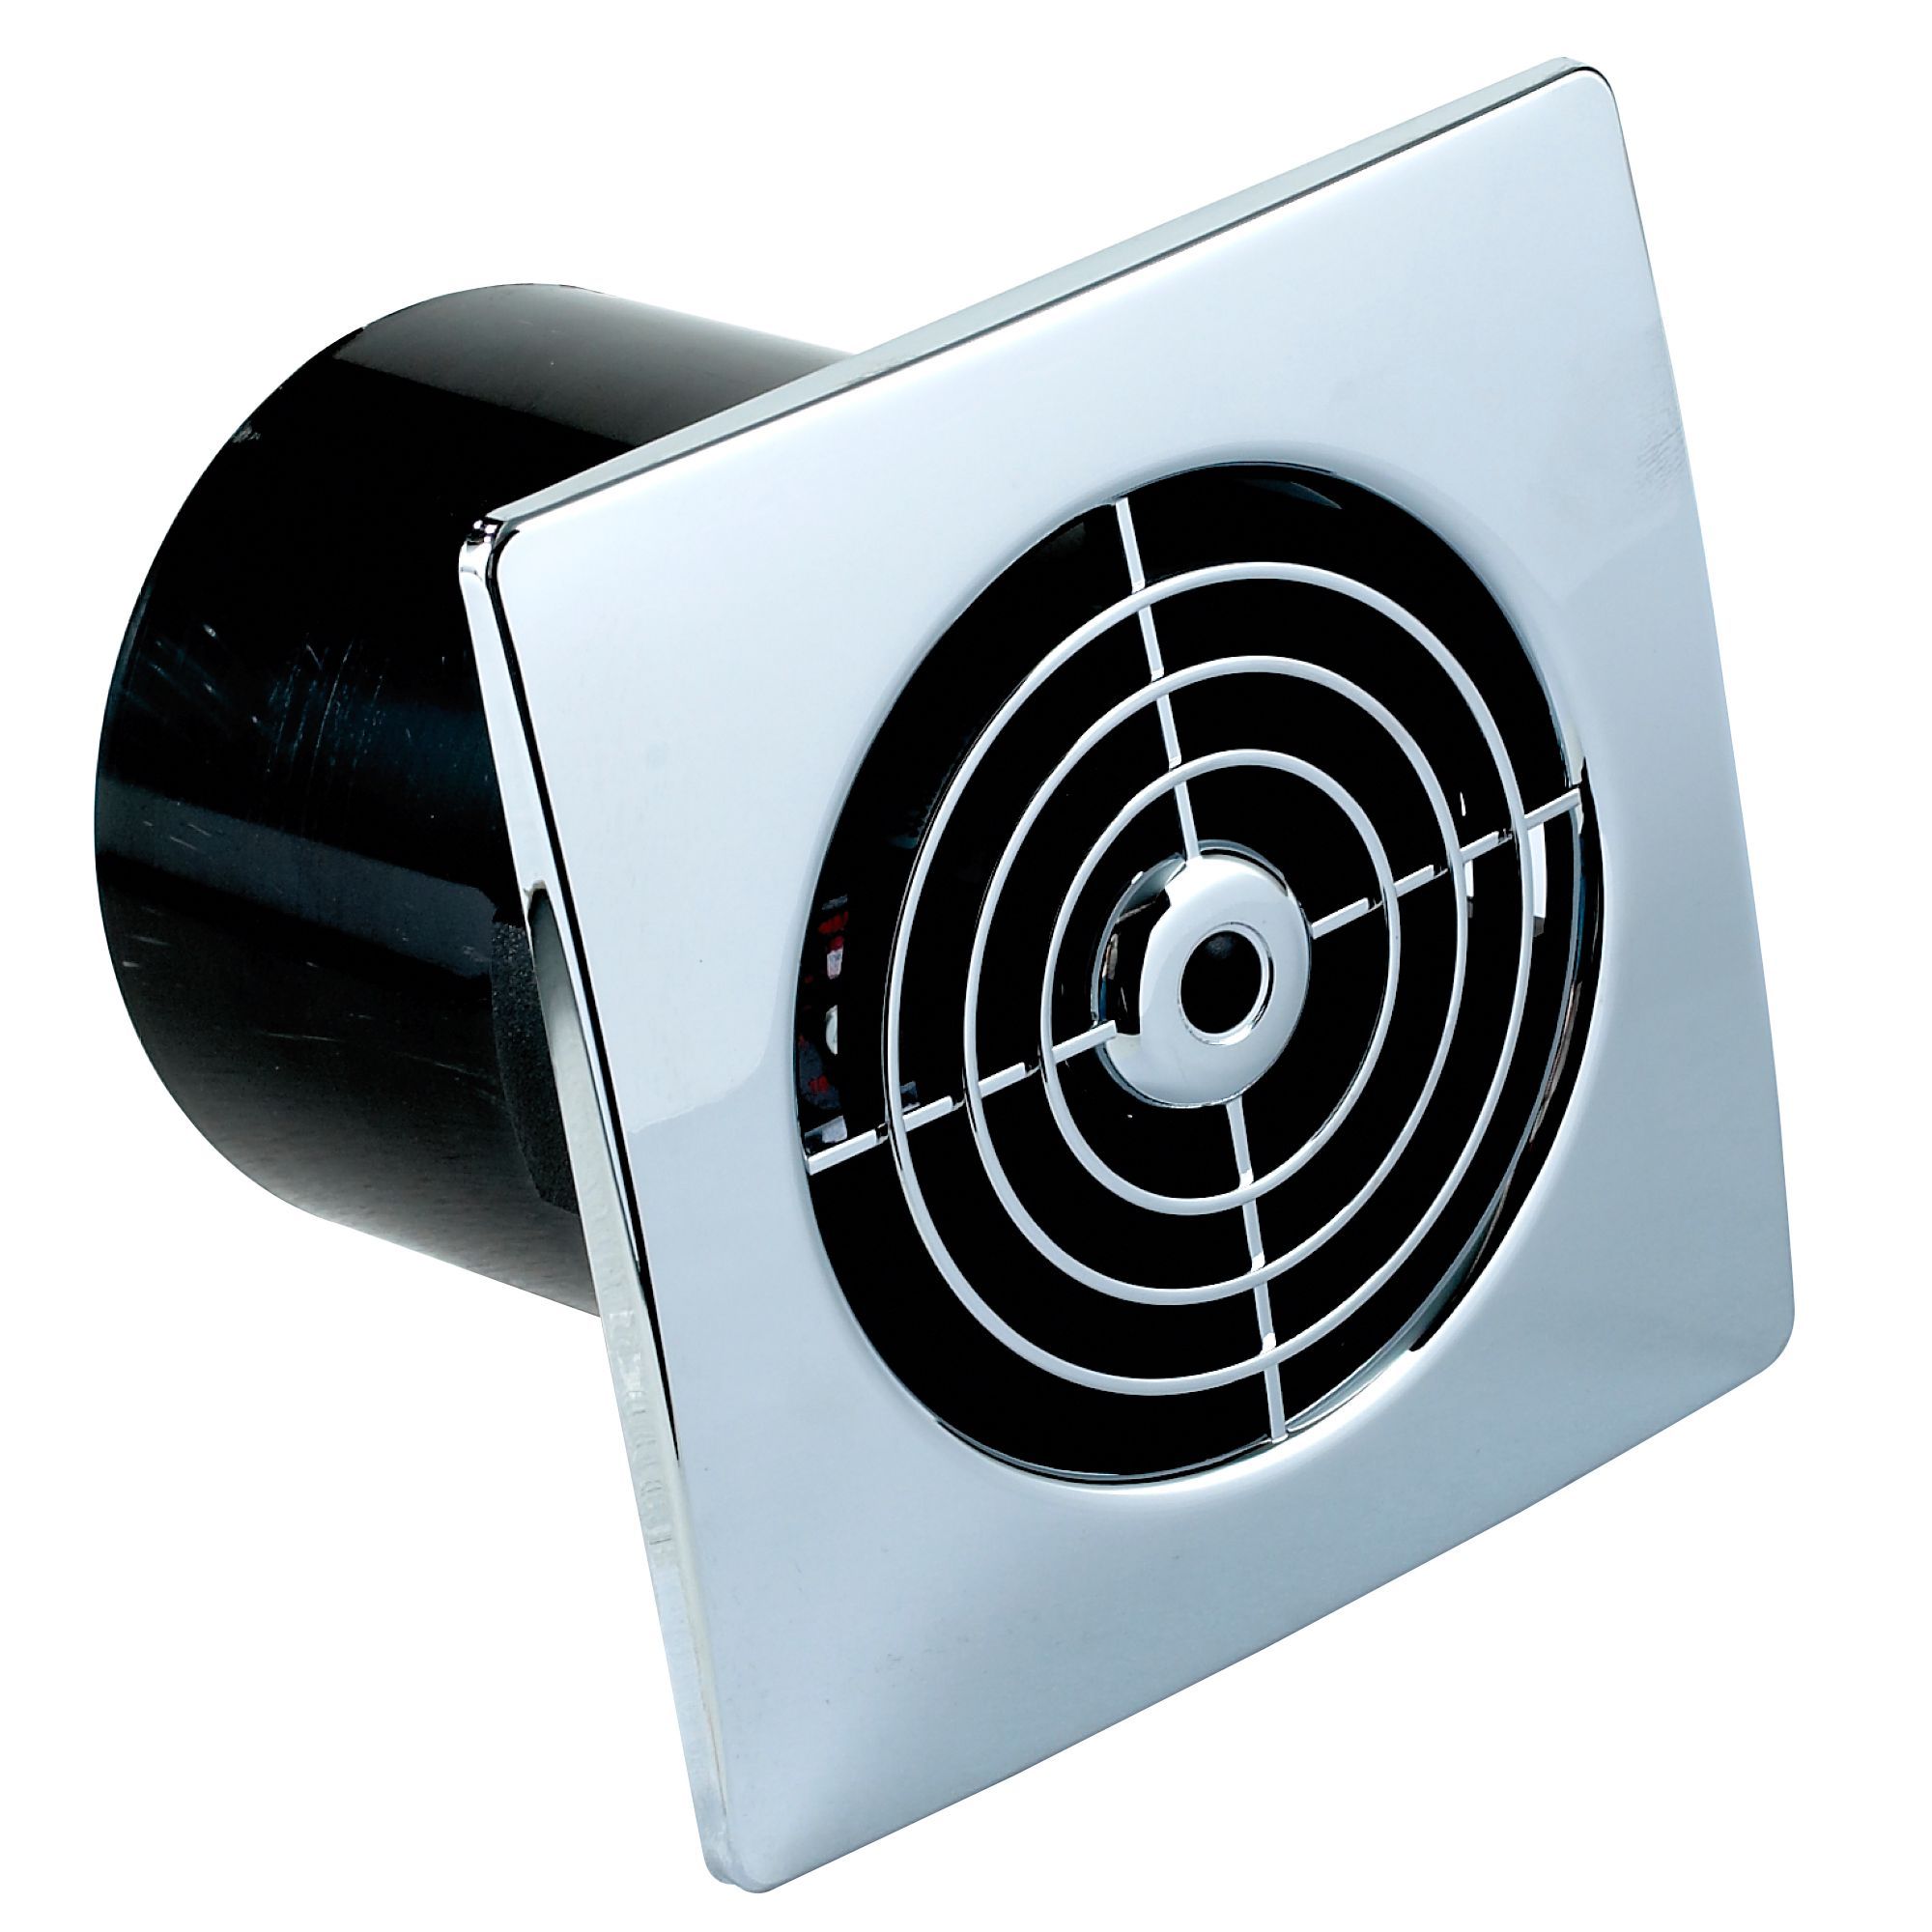 Вентиляторы для ванны вытяжки купить. Вентилятор Blauberg Sileo 125. Extractor Fan 100 вентилятор бесшумный. Вентилятор Blauberg Tubo 100. Вентилятор Blauberg Tubo 100т.